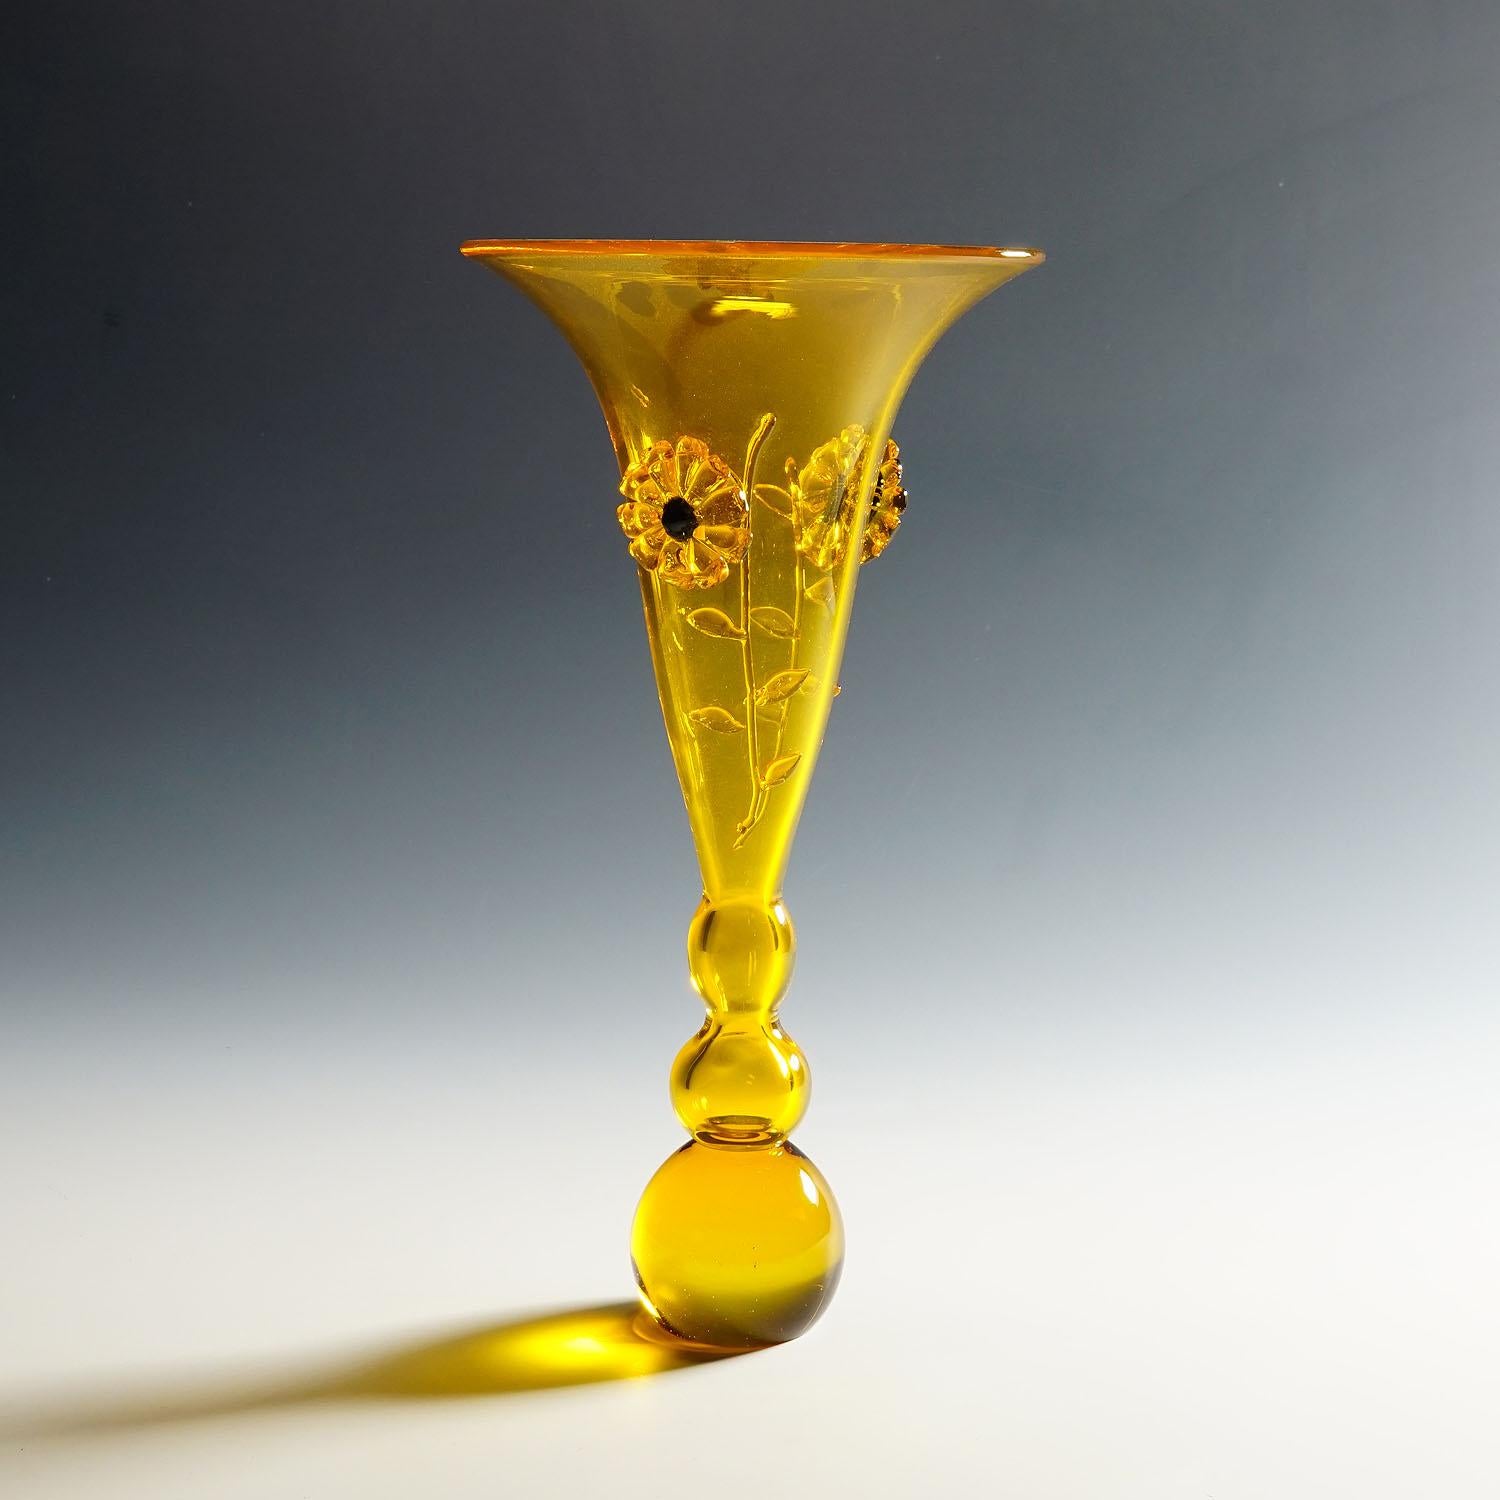 Vase vintage en verre d'art de Murano par Franco Moretti circa. 1970s

Un vase vintage en verre d'art de Murano conçu par Franco Moretti vers les années 1970. Verre jaune miel avec applications en forme de fleurs. Signature incisée 